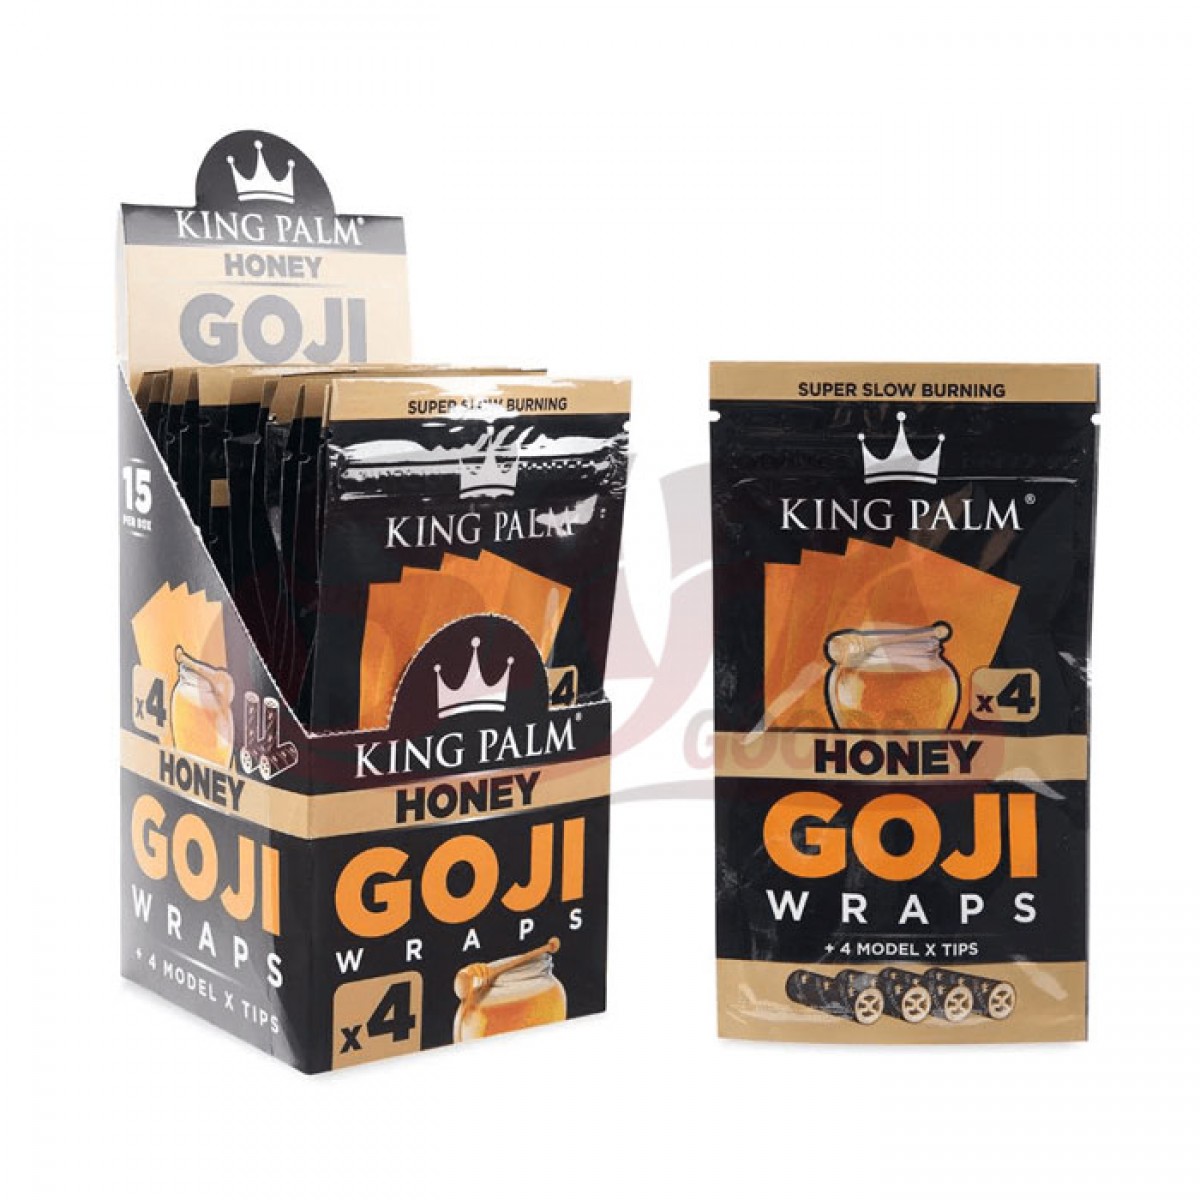 King Palm Goji Wraps - 15CT / 4PK